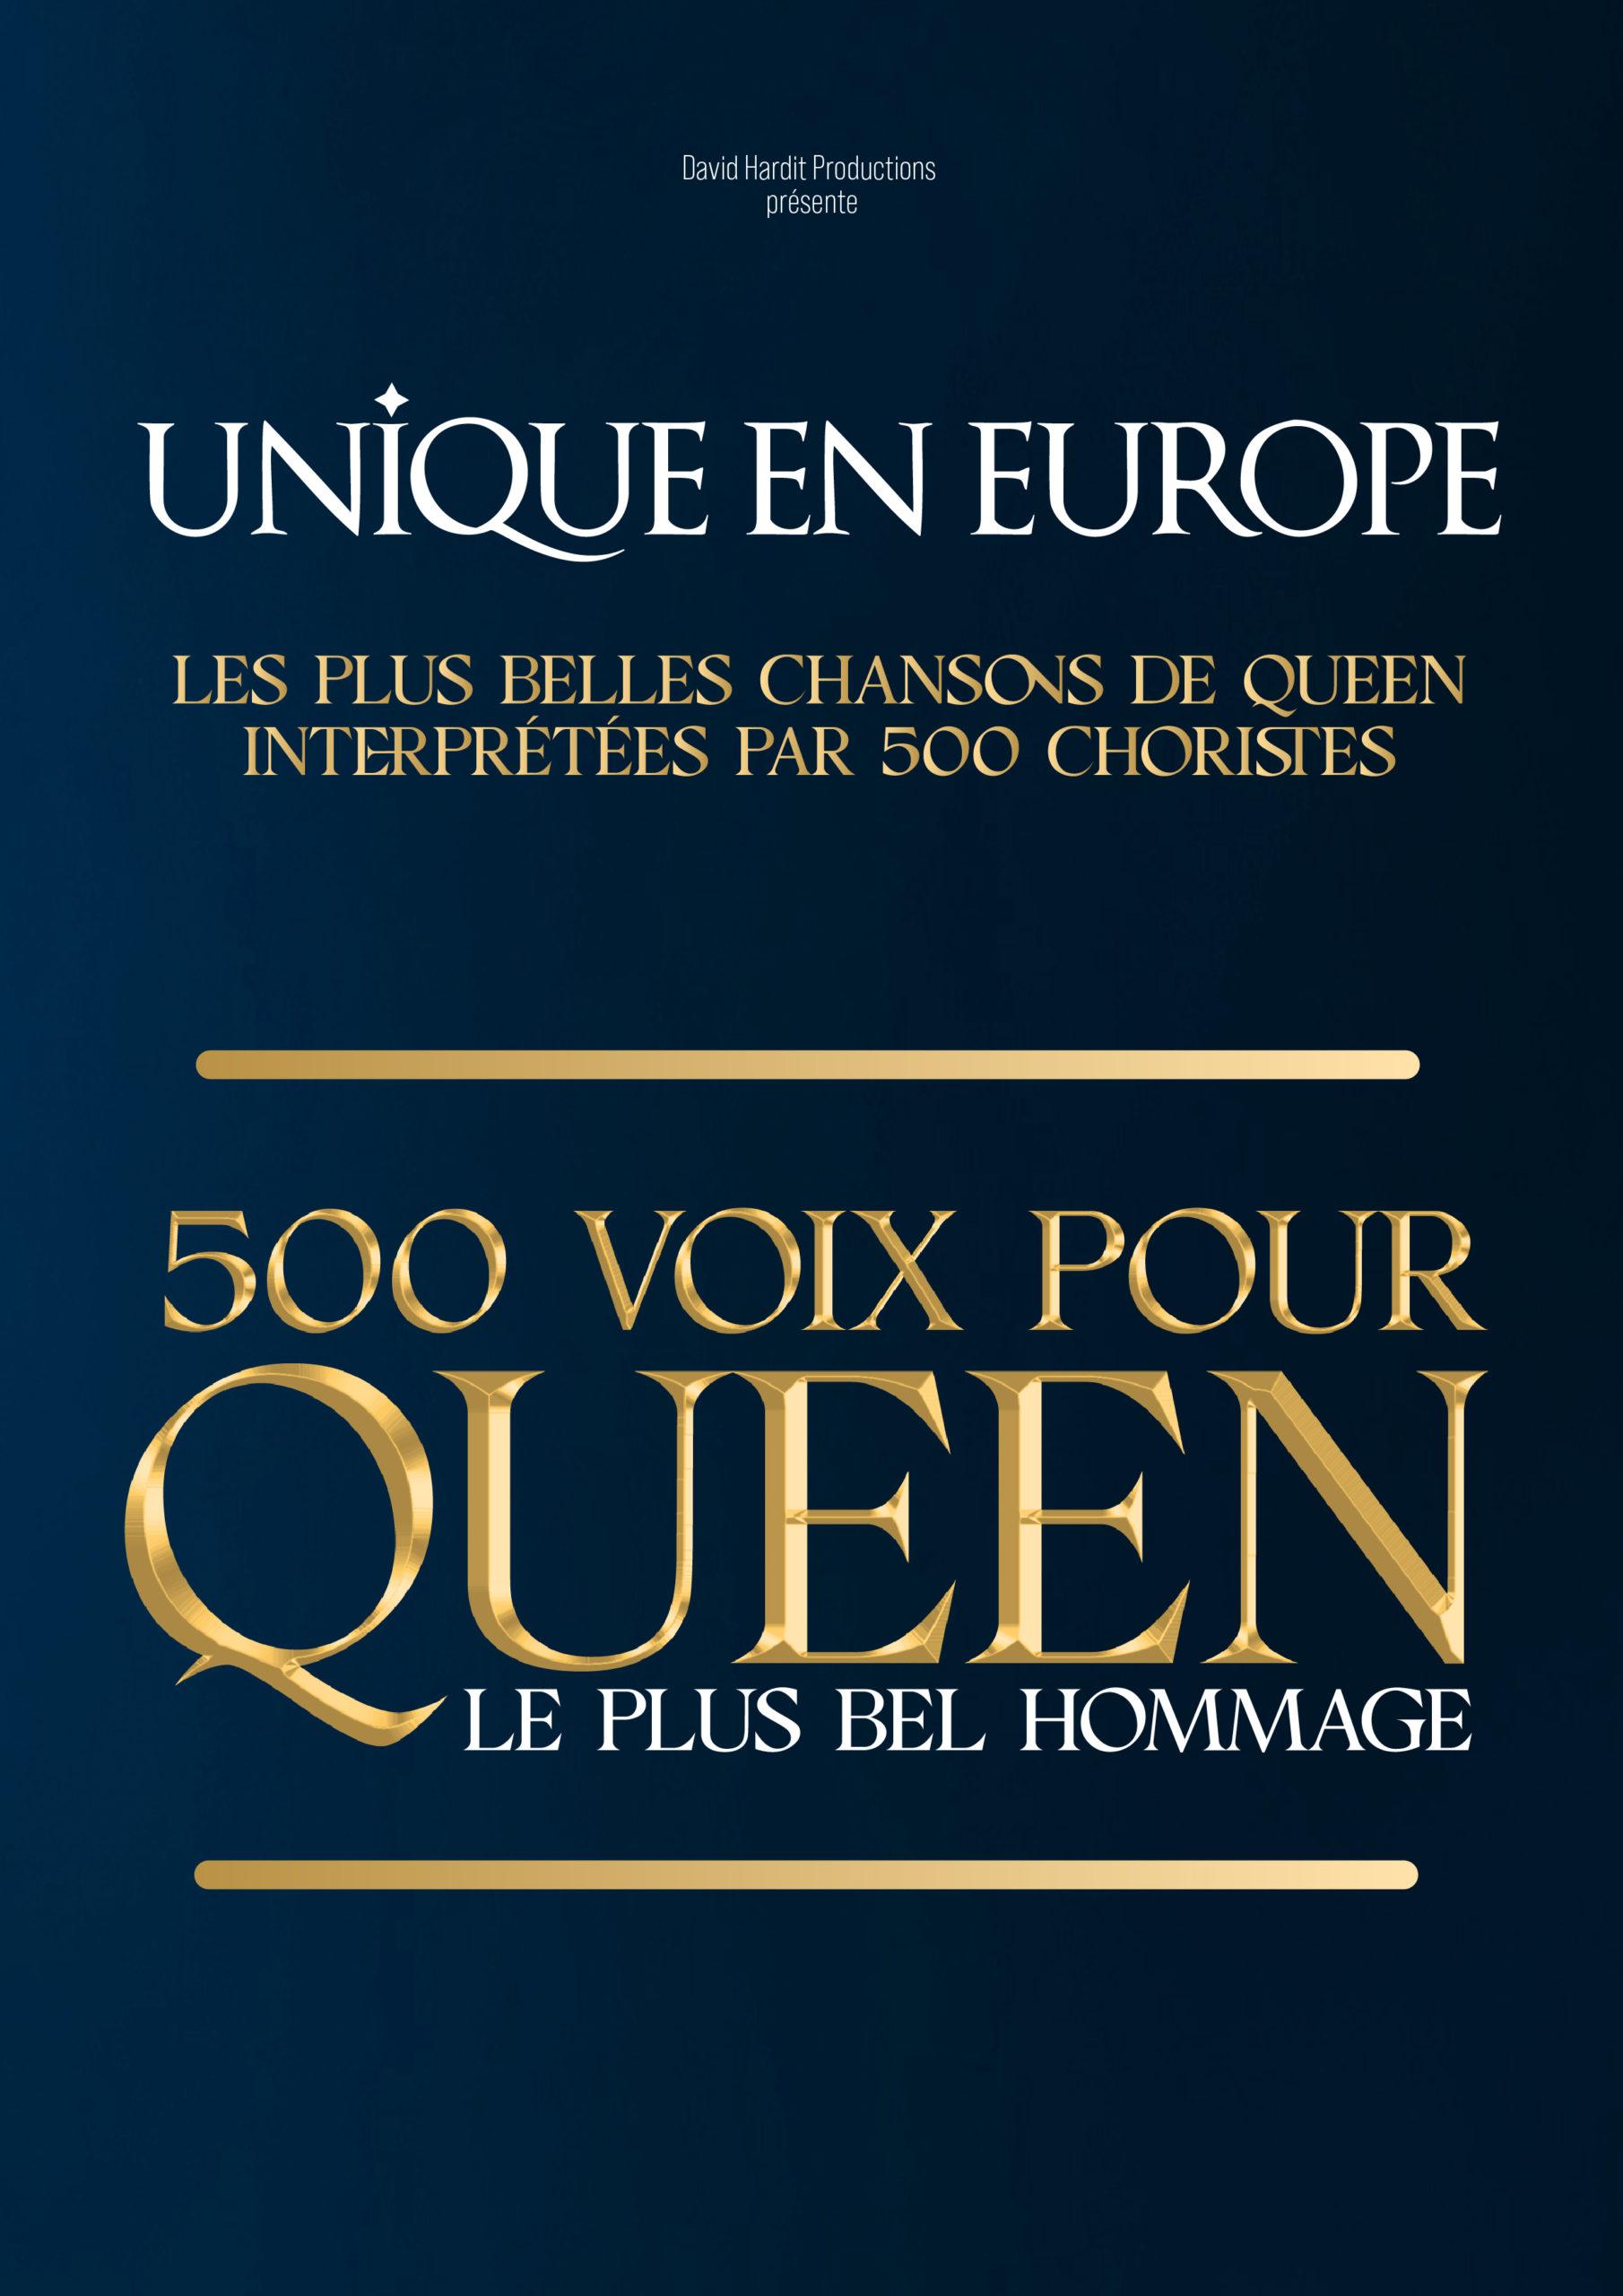 500 voix pour queen - Amphithéâtre 3000 - Lyon (69)